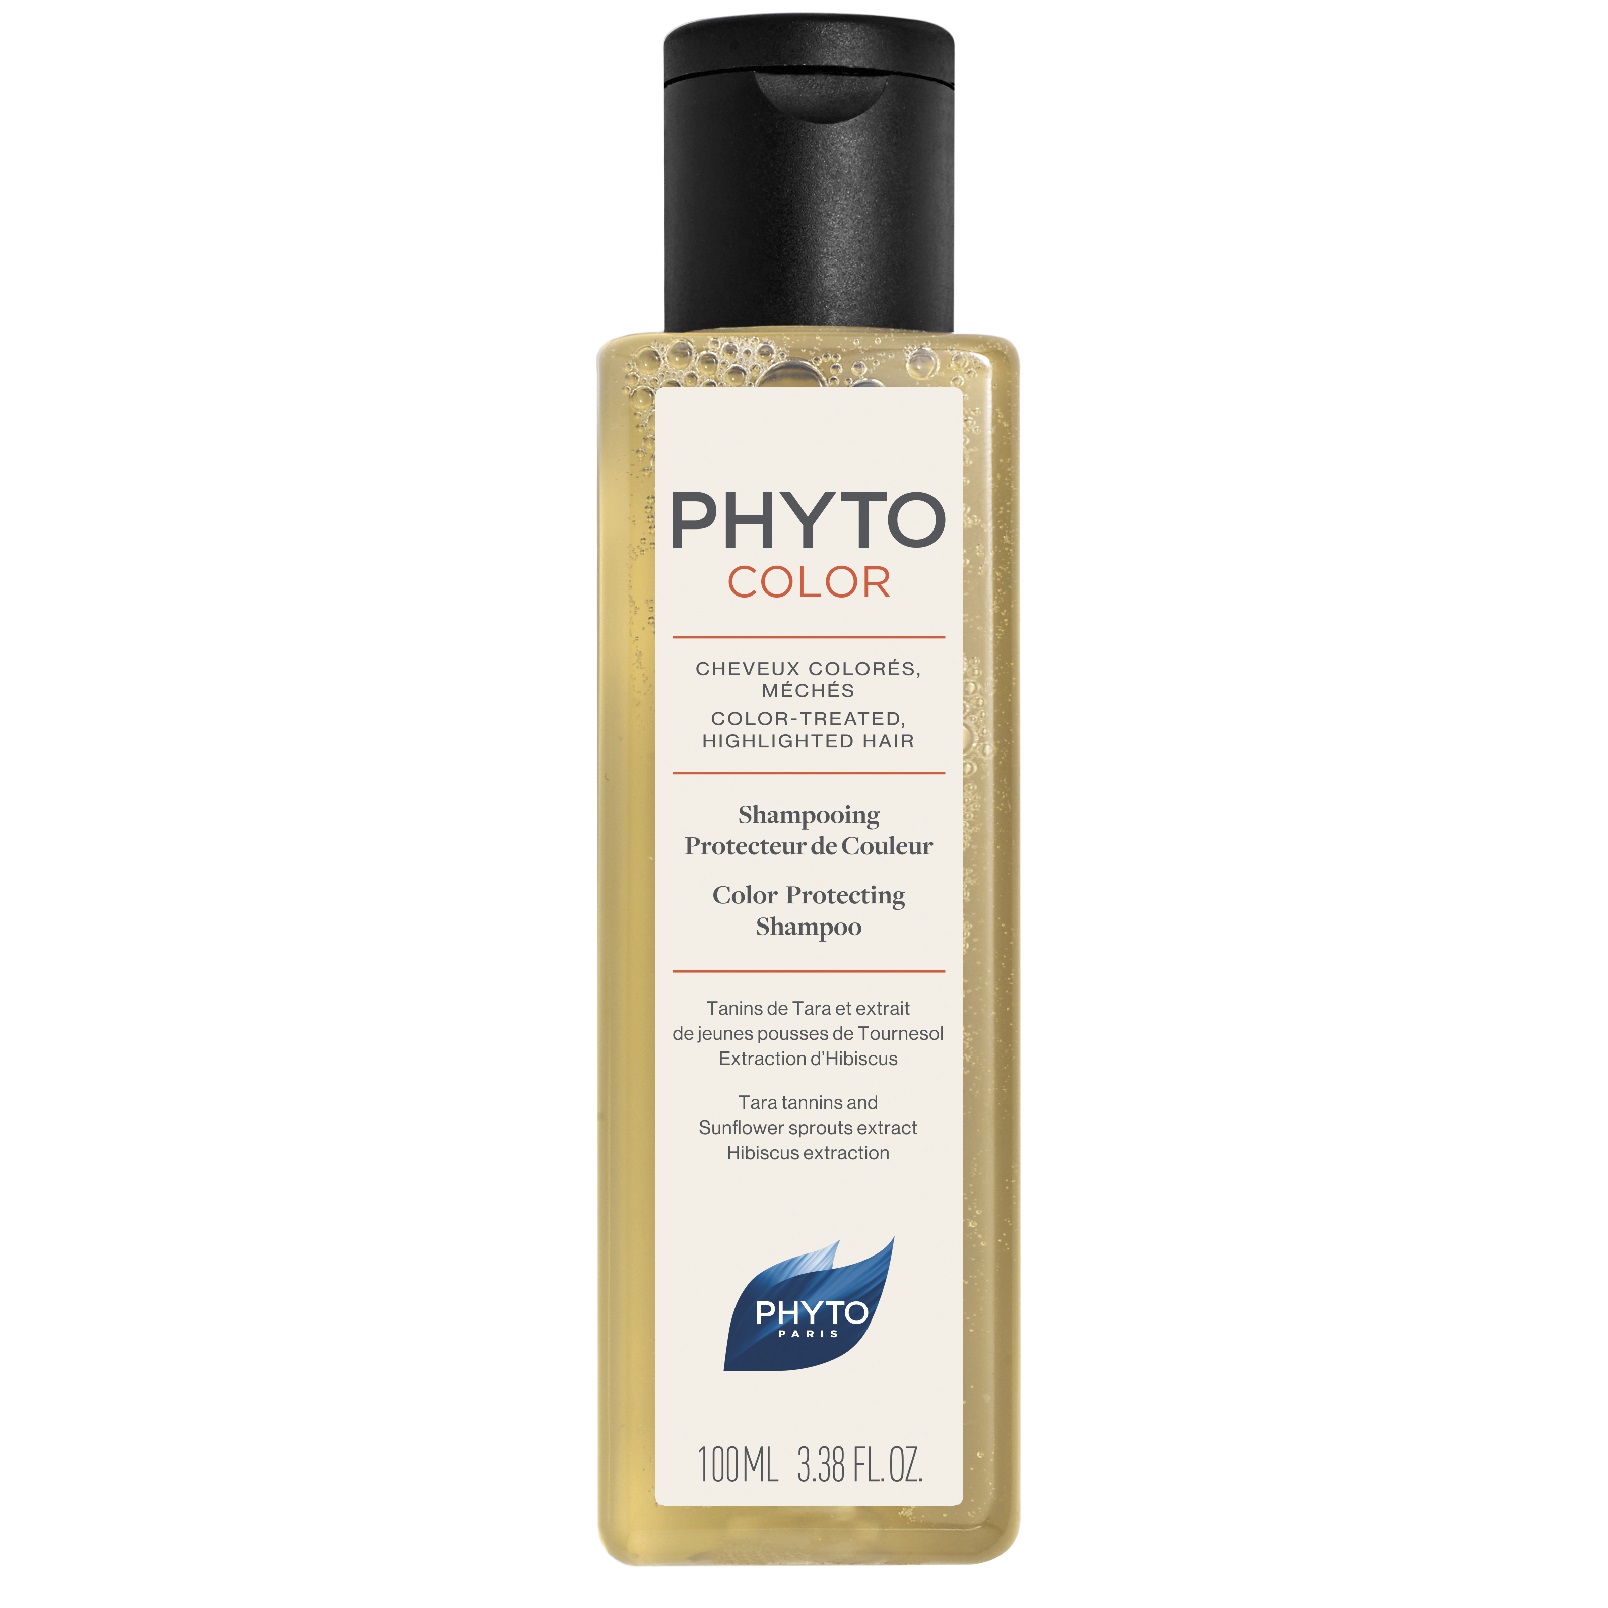 Захисний шампунь Phyto Phytocolor для фарбованого волосся, 100 мл - фото 1